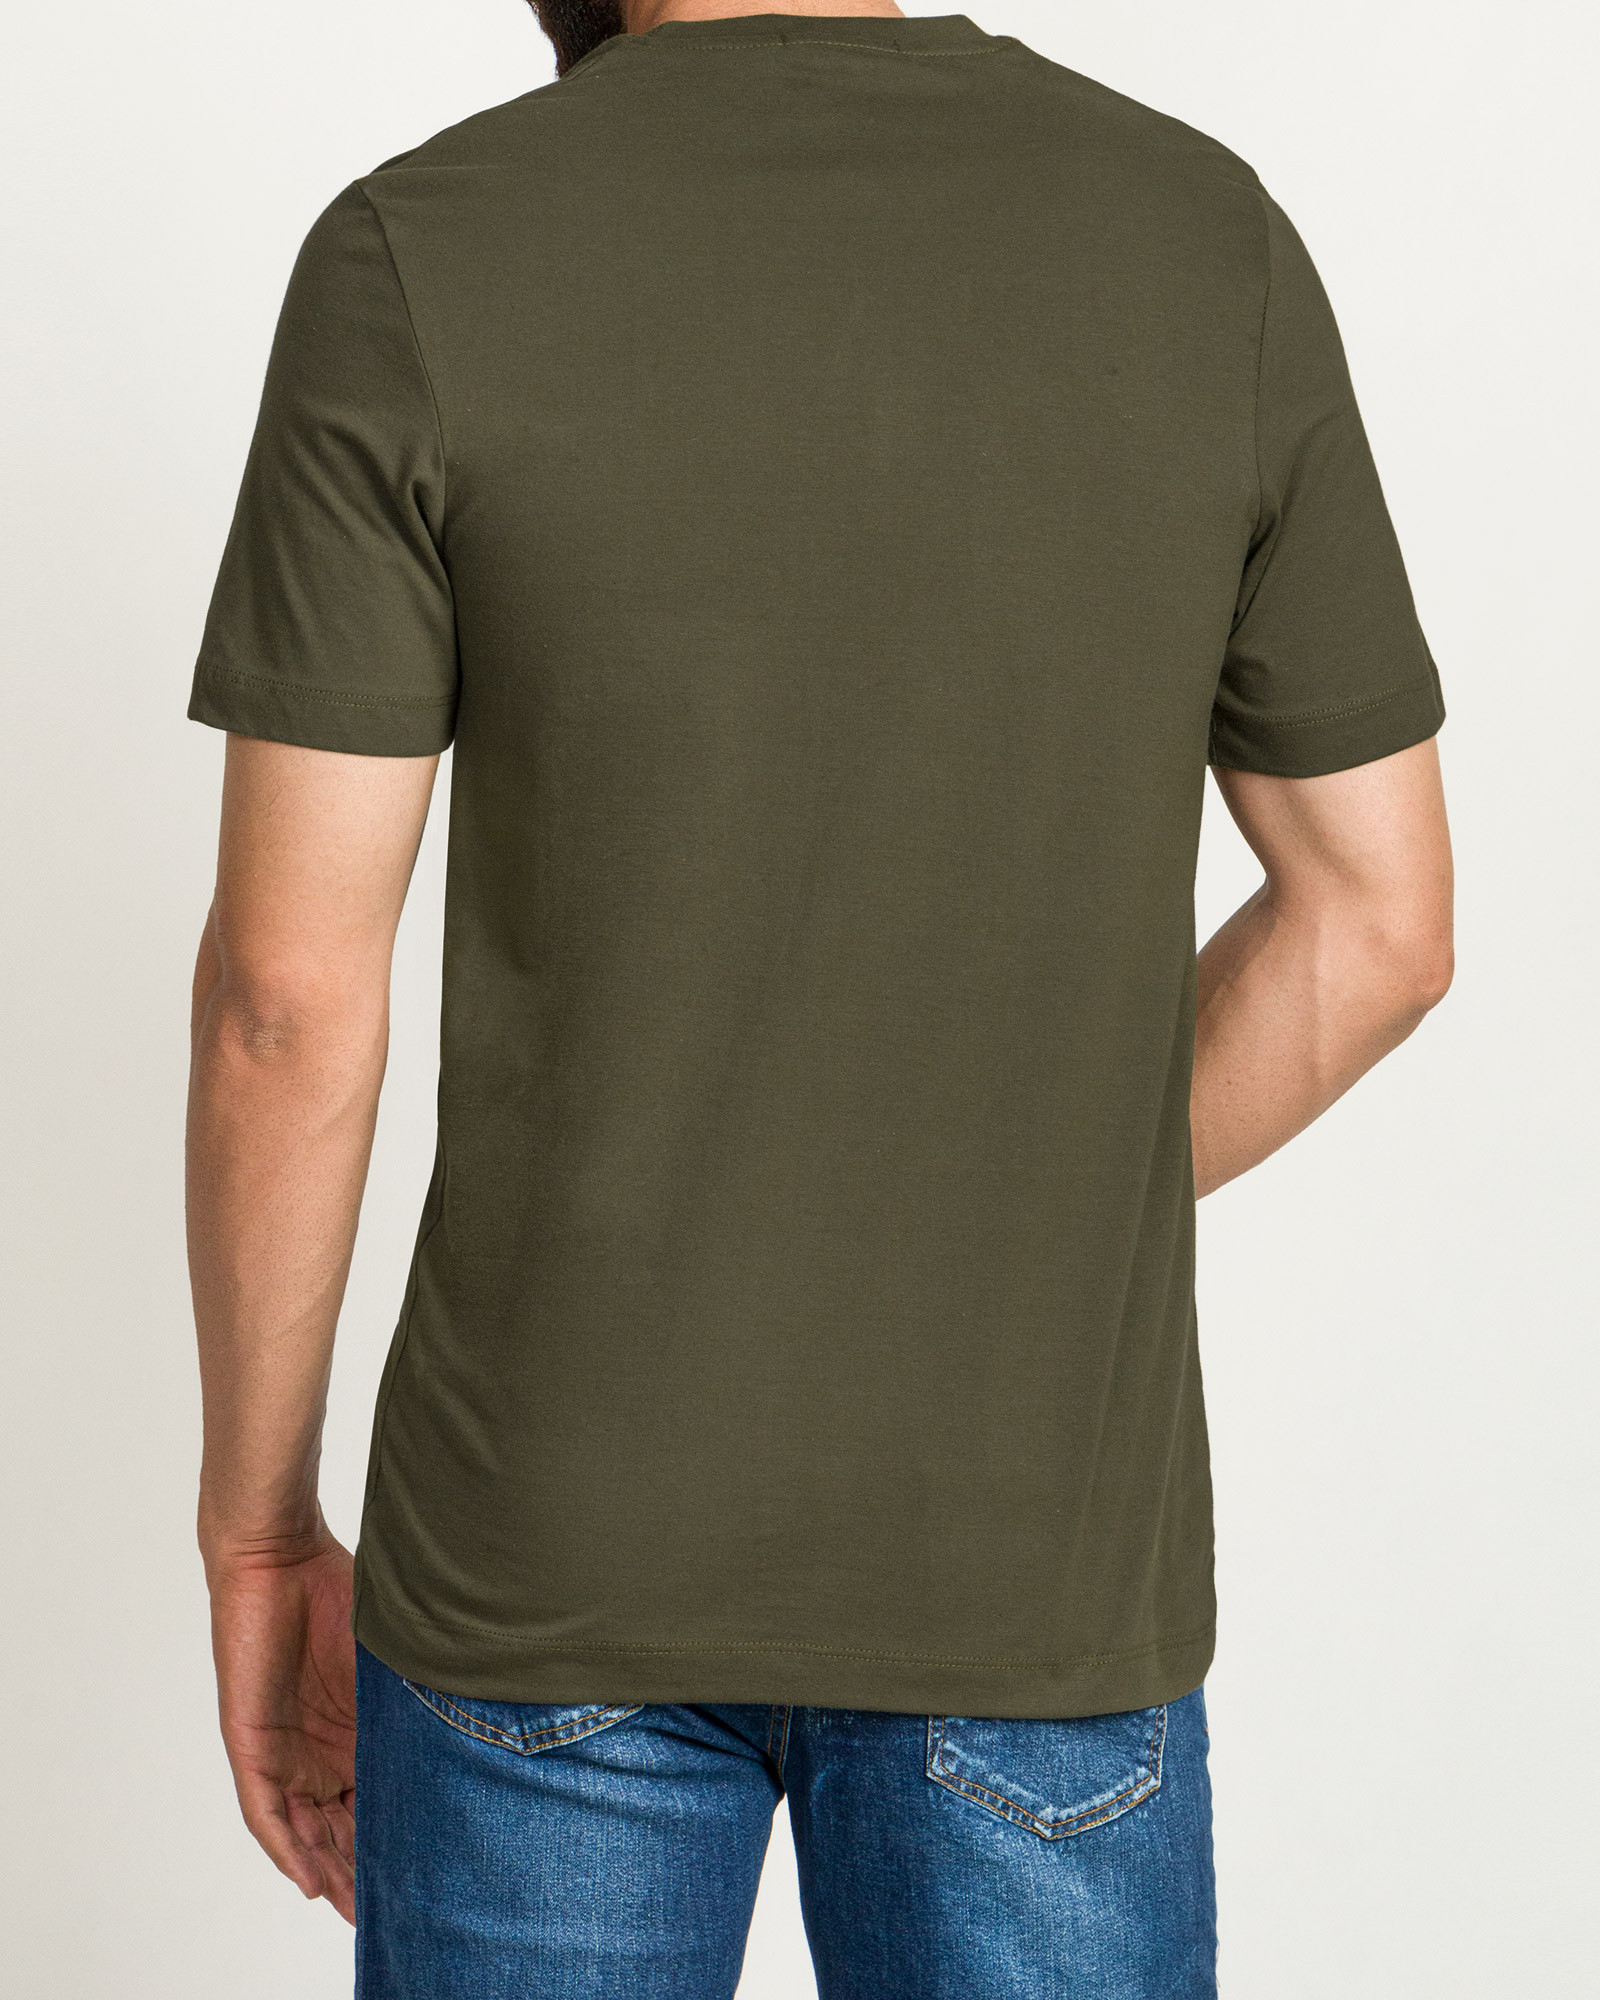 خرید تیشرت آستین کوتاه مردانه چاپ برجسته سبز 20196127